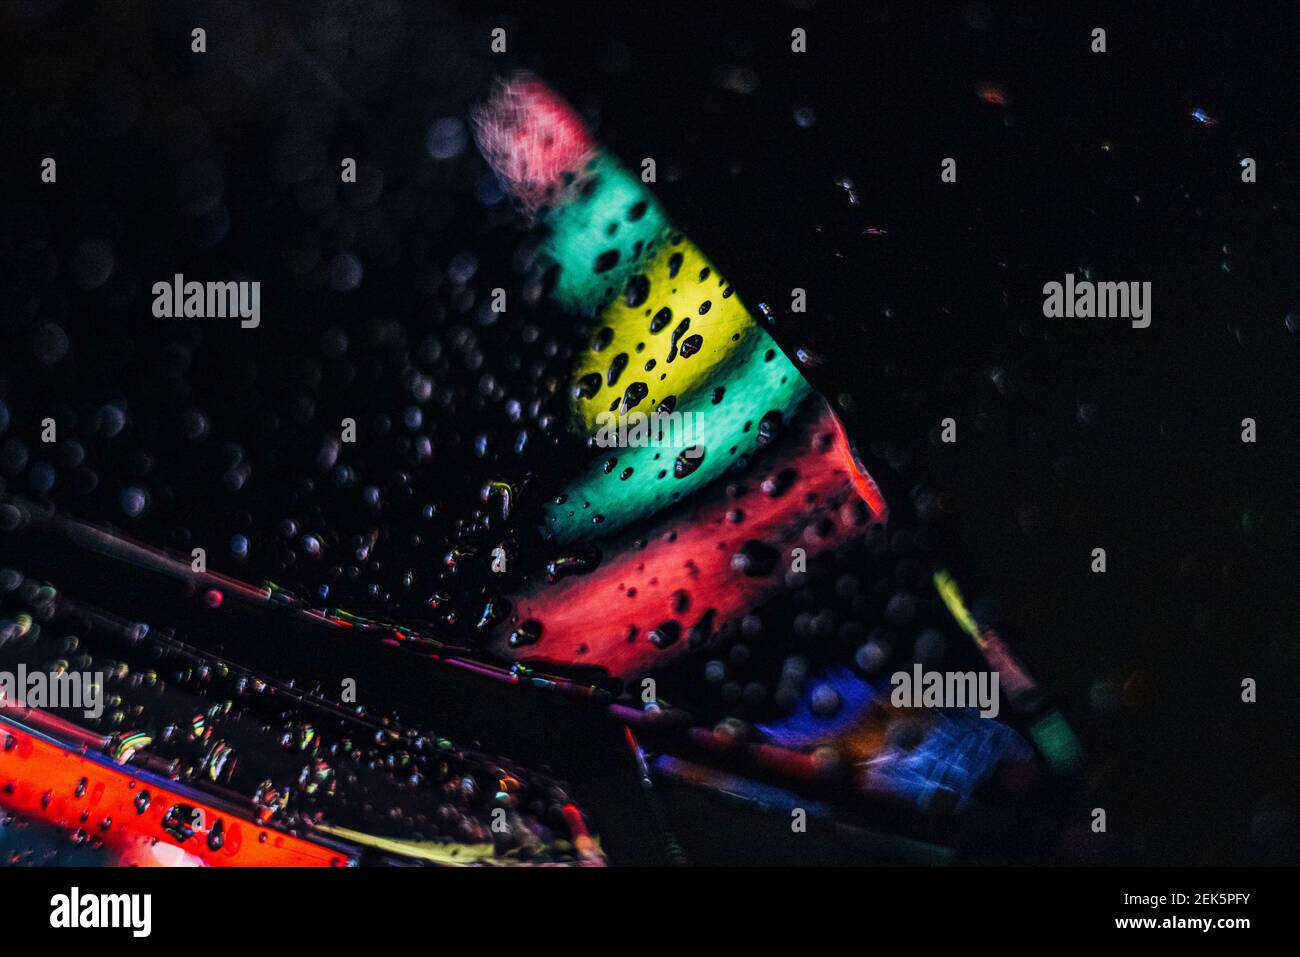 Kšln, 18.02.21: Strassen von Kšln leuchten in bunten Farben nach einem abendlichen Regen; Wassertropfen sammeln sich auf einem Auto und werden farblic Stock Photo